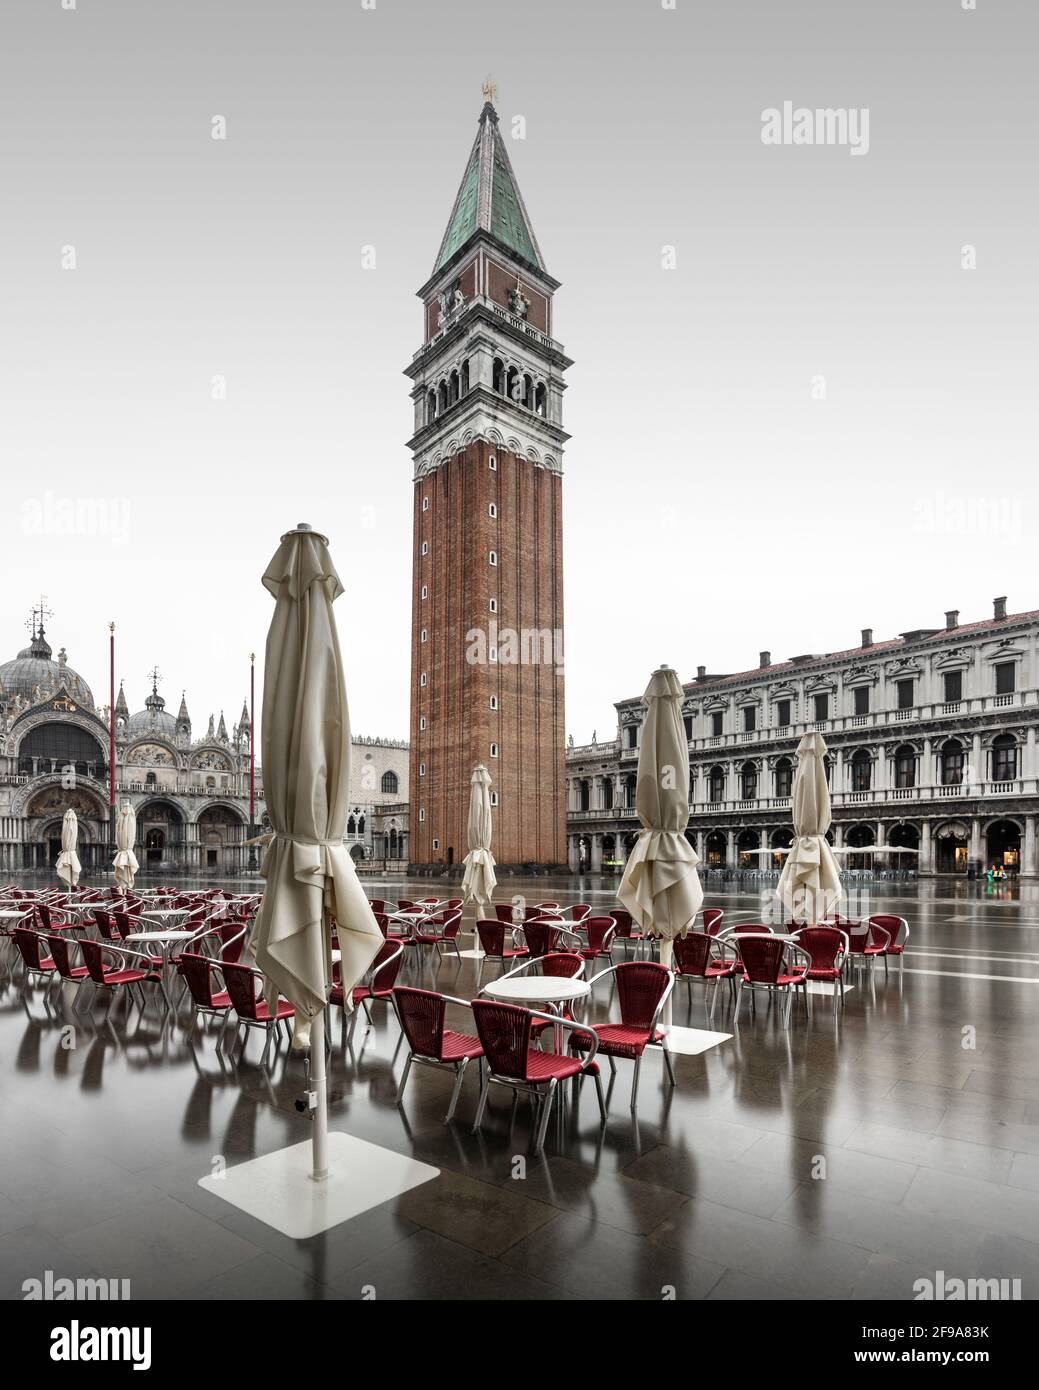 Morgens ist der Markusplatz in Venedig oft leer. Es gibt weniger Besucher in der Stadt, vor allem in den kühleren Wintermonaten. Ein- bis zweimal im Monat überflutet die berühmte Flut den Markusplatz und sorgt für schöne Reflexionen. Stockfoto